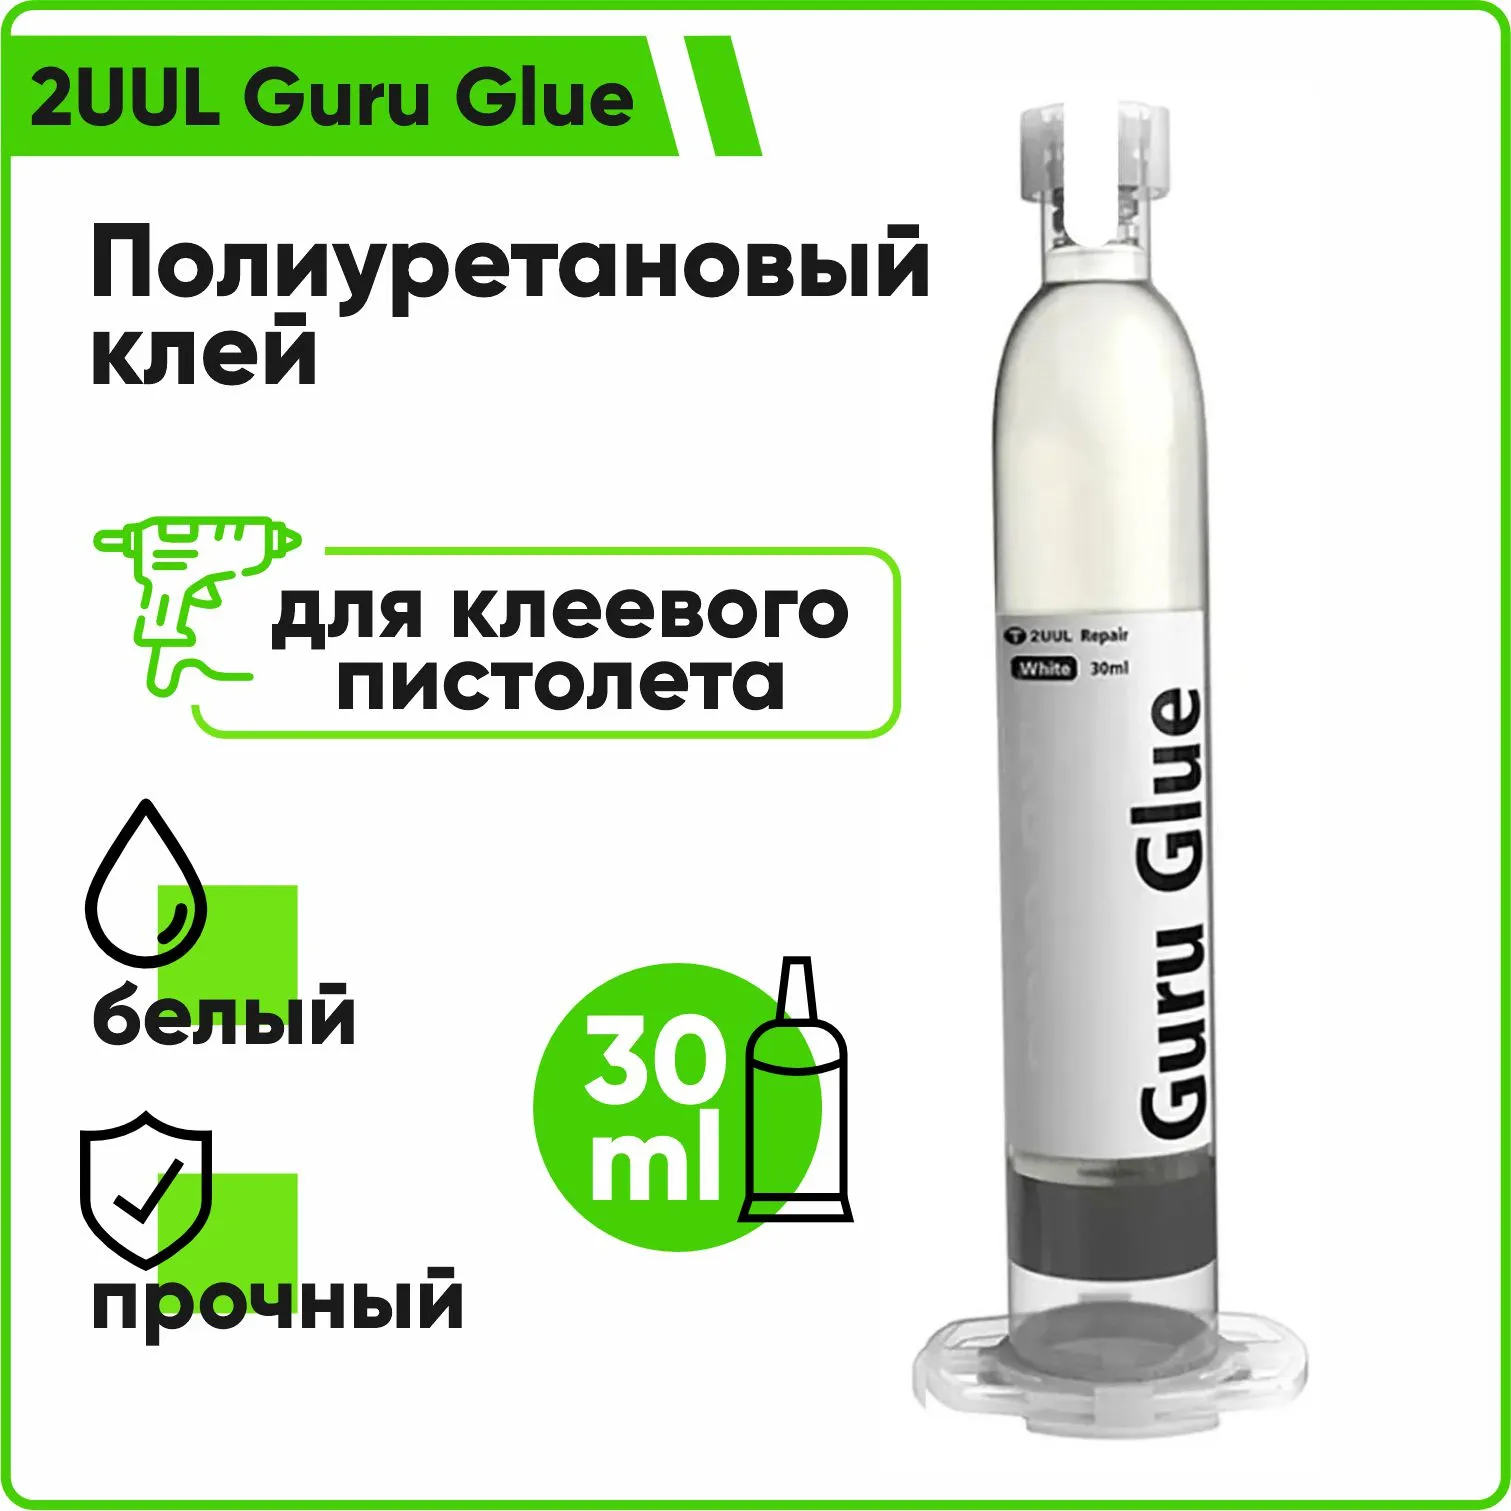 Полиуретановый клей 2UUL Guru Glue Soft Buffer Adhesive DA48 для клеевого пистолета (белый)